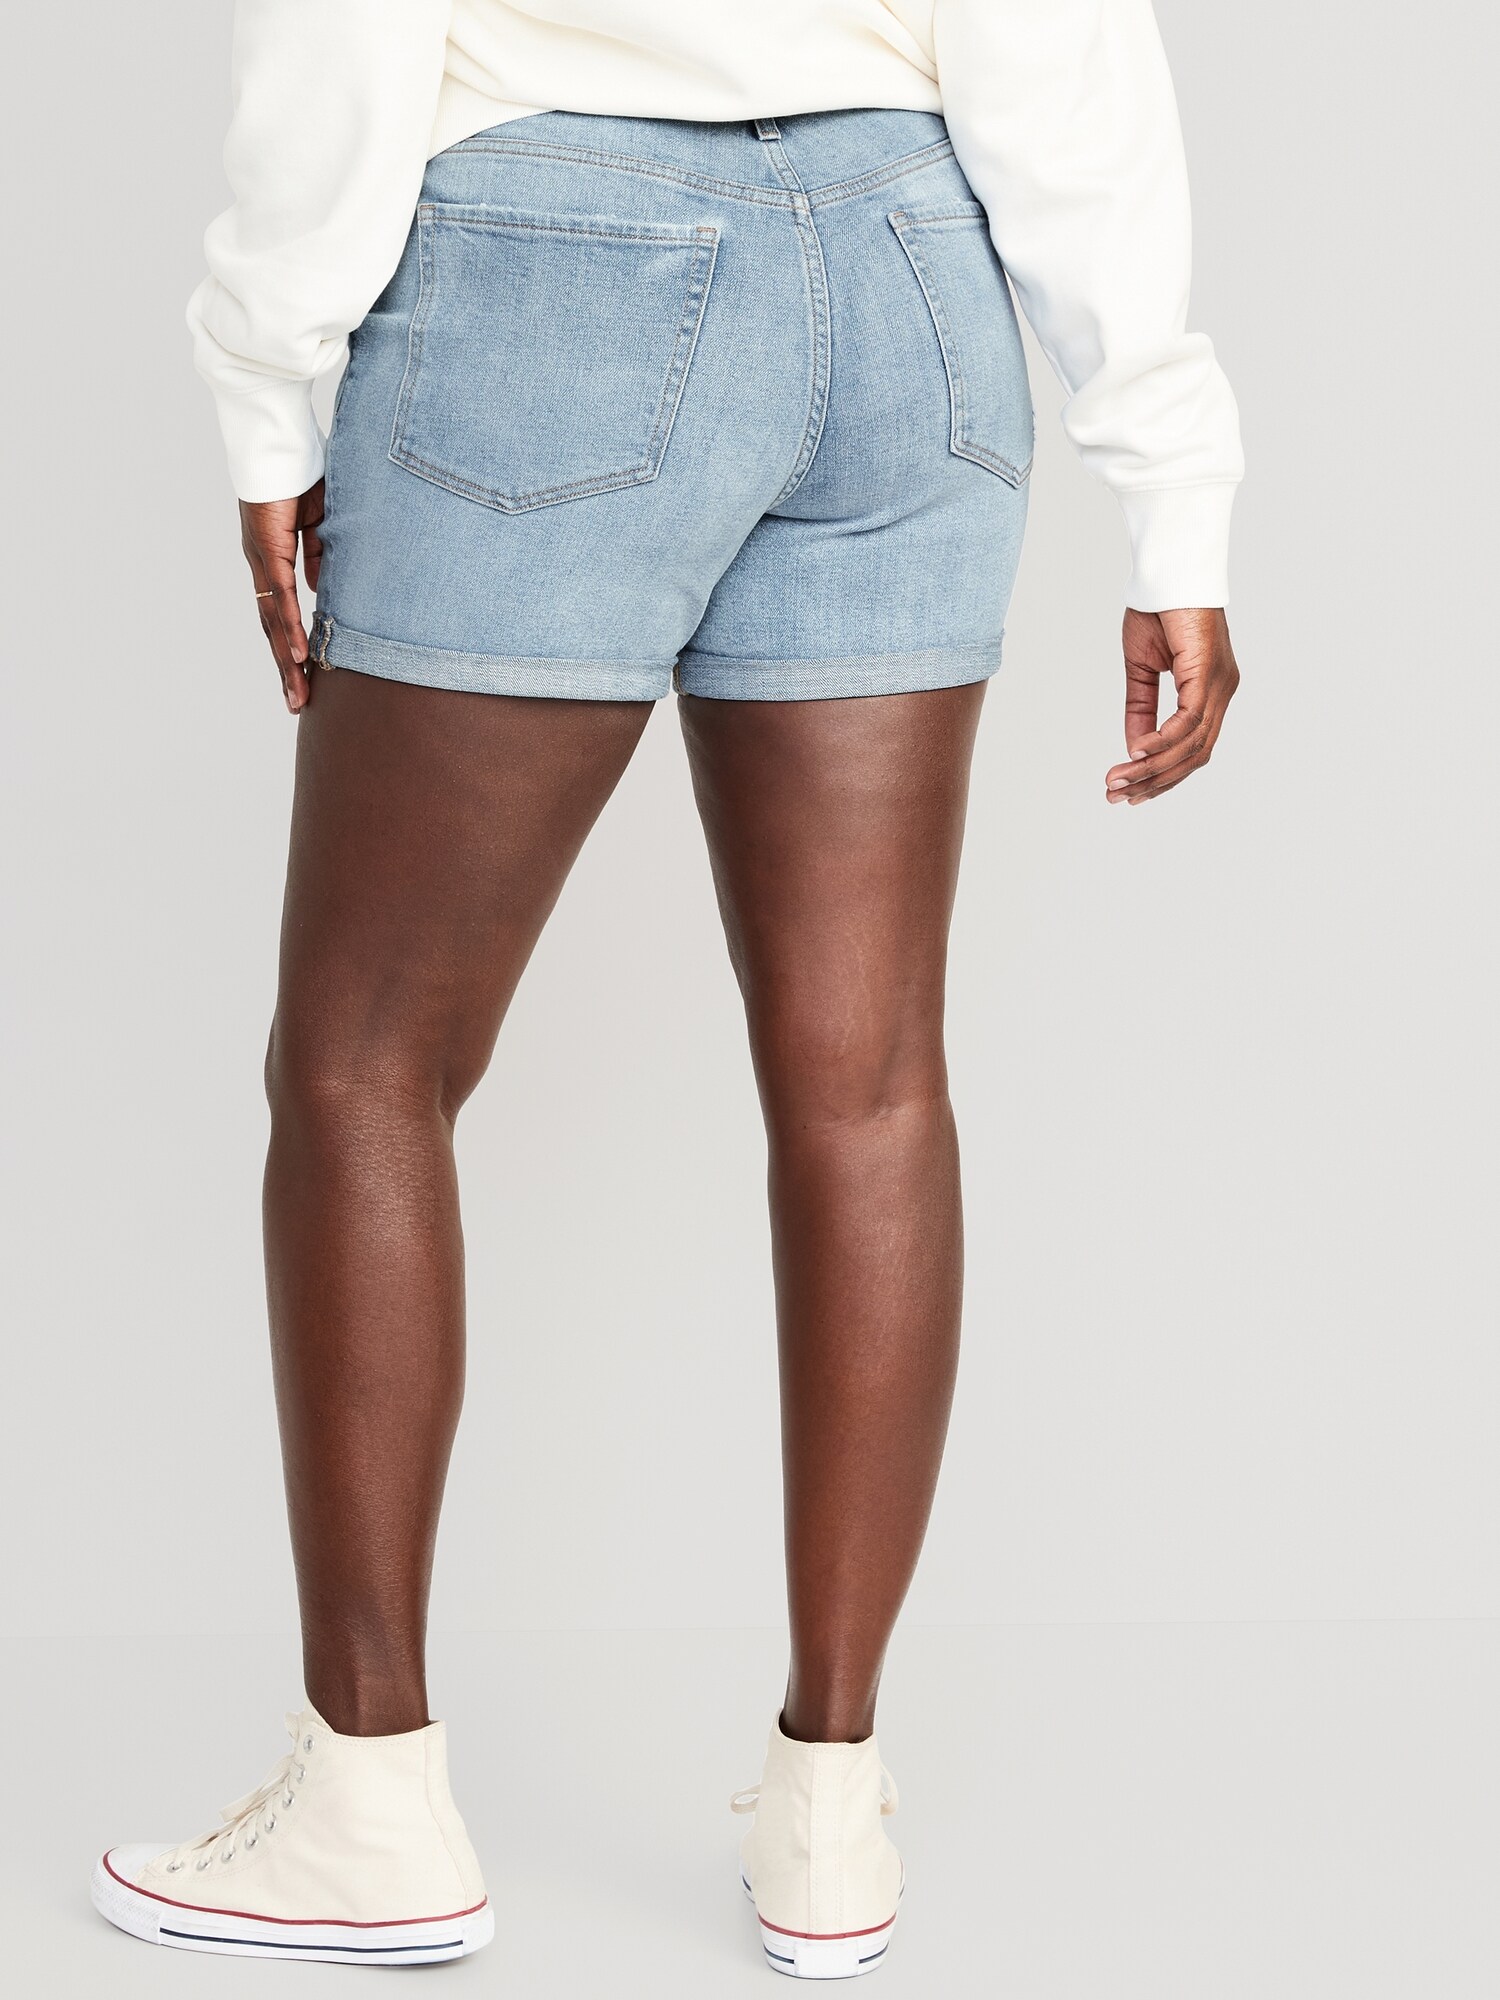 Women's Sexy HighWaist Denim Shorts*2138*